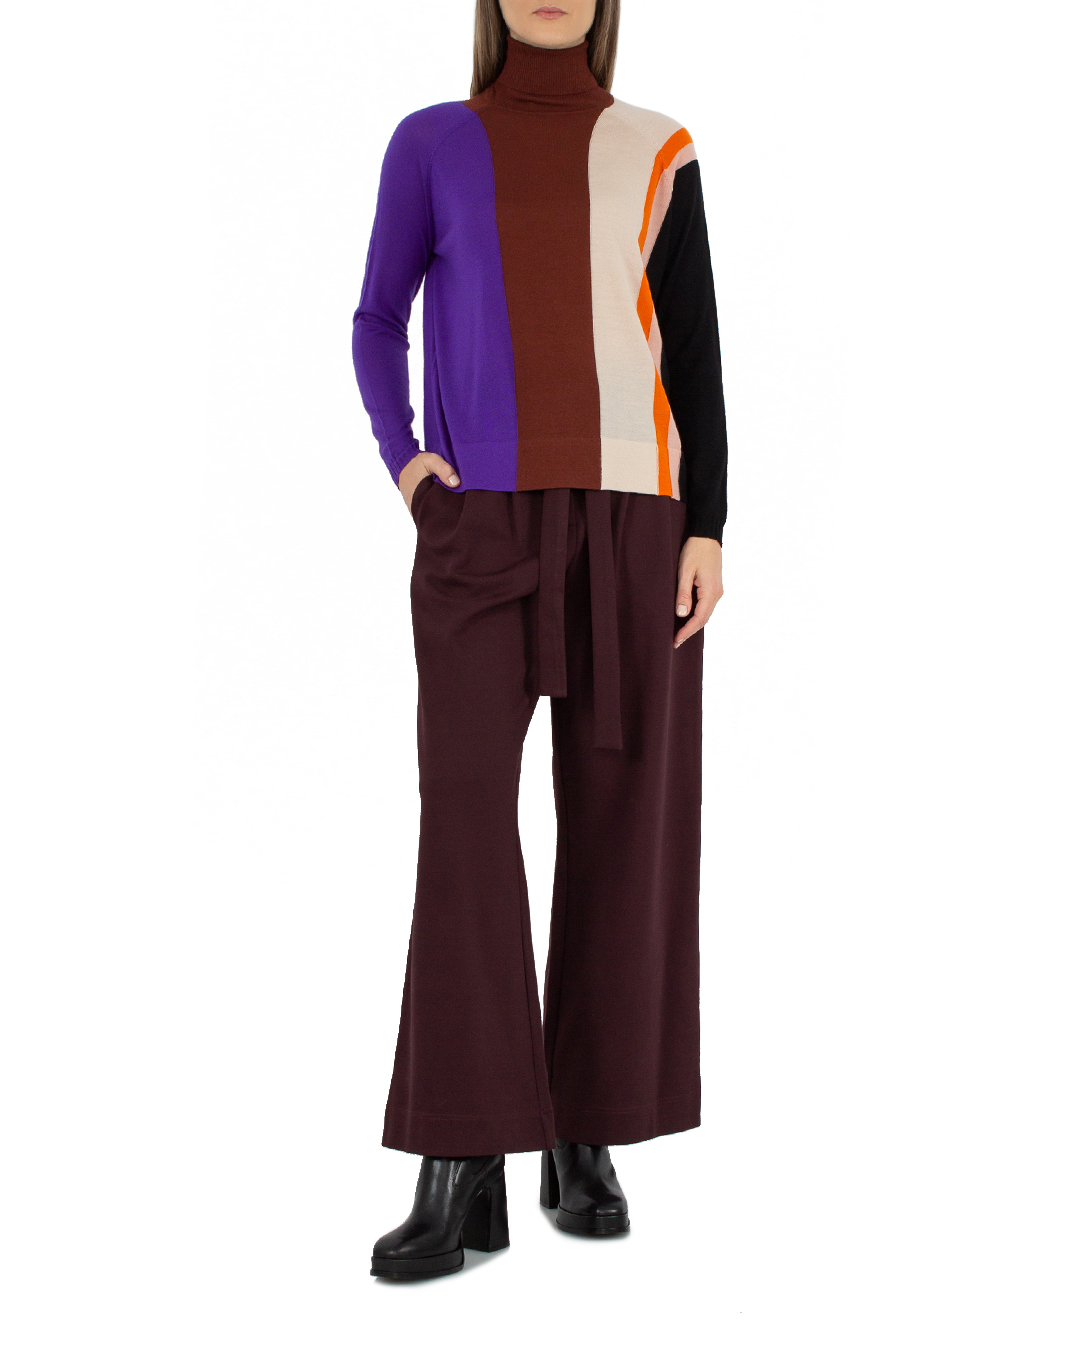 свитер PSOPHIA 501PUL1689 коричневый+фиолетовый+принт l, размер l, цвет коричневый+фиолетовый+принт 501PUL1689 коричневый+фиолетовый+принт l - фото 2